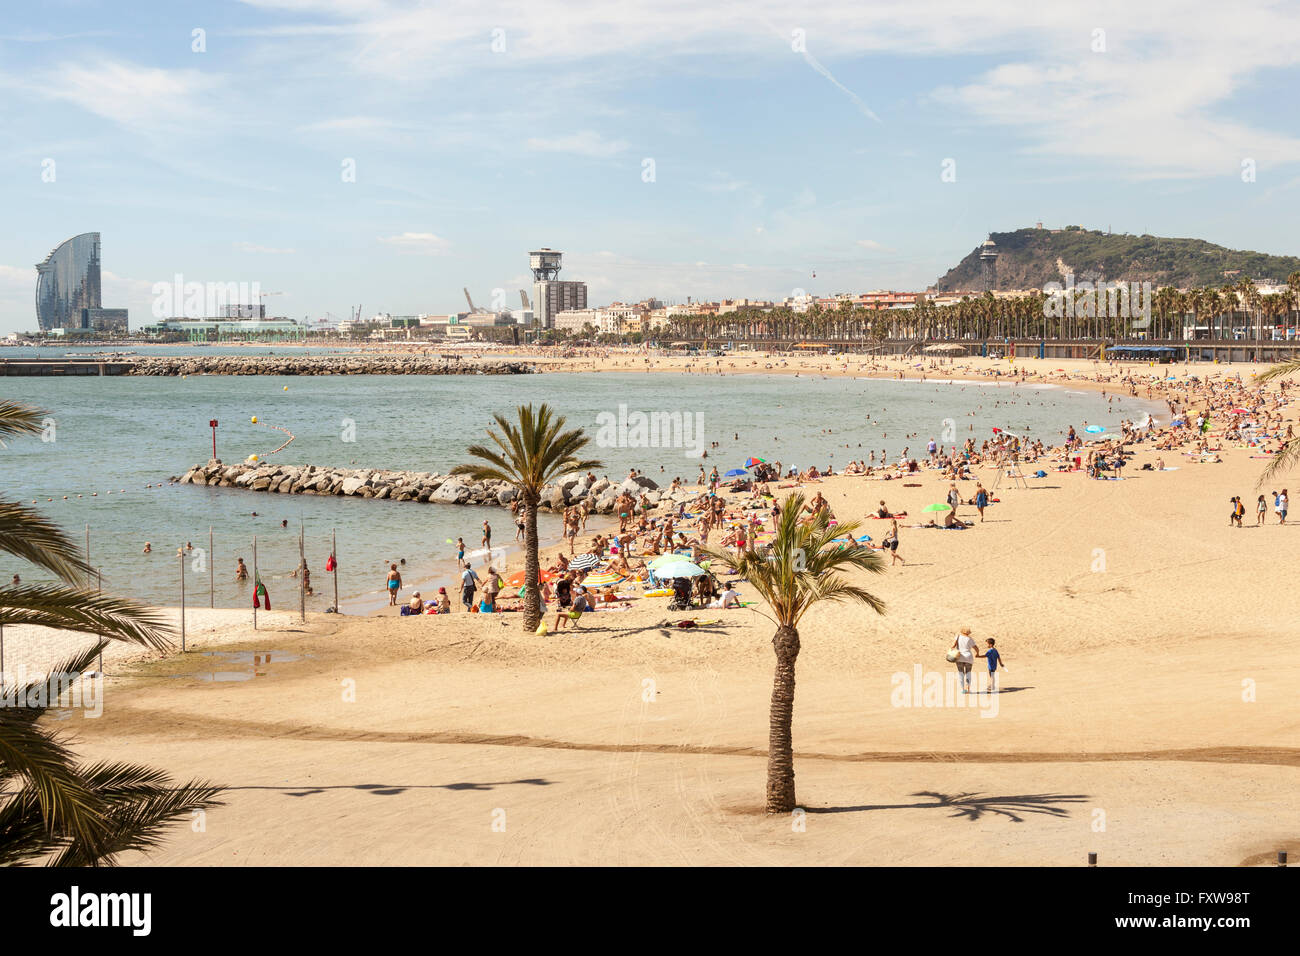 W Barcelona, également connu sous le nom de Hotel Vela, sur la gauche, et de la plage, Barcelone, Espagne Banque D'Images